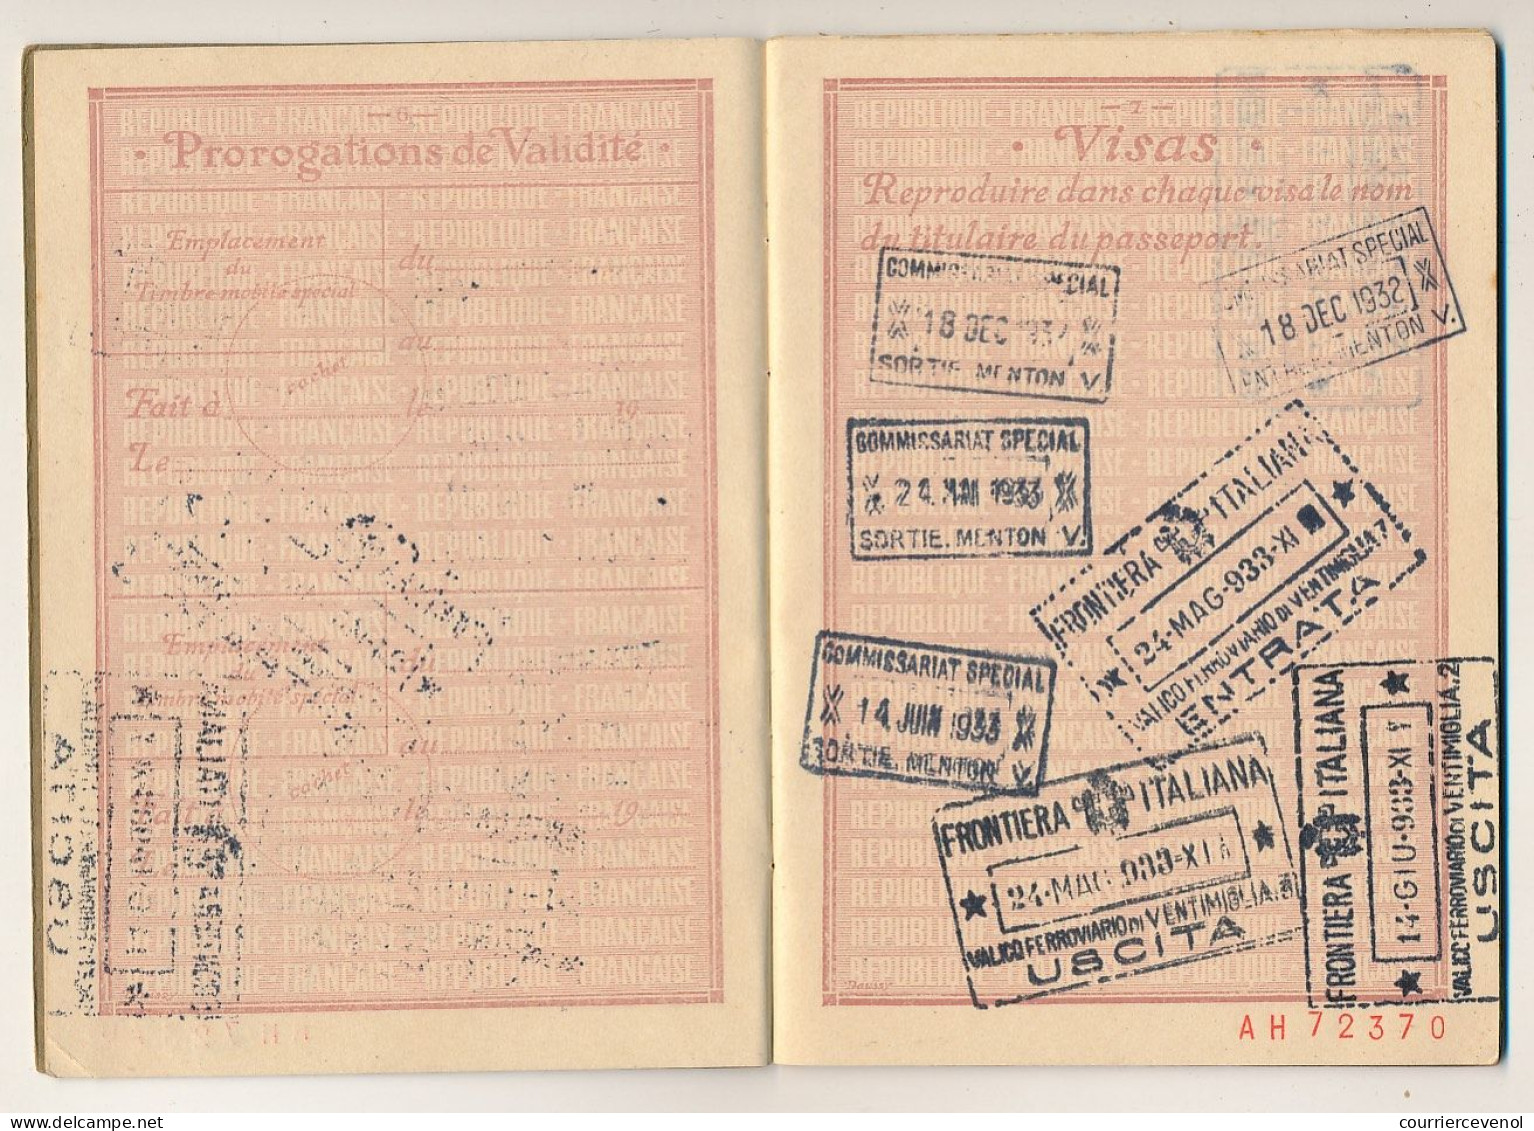 FRANCE - Passeport à l'étranger 20F Barcelonnette (Basses Alpes) 1932 - Photos mère et enfant